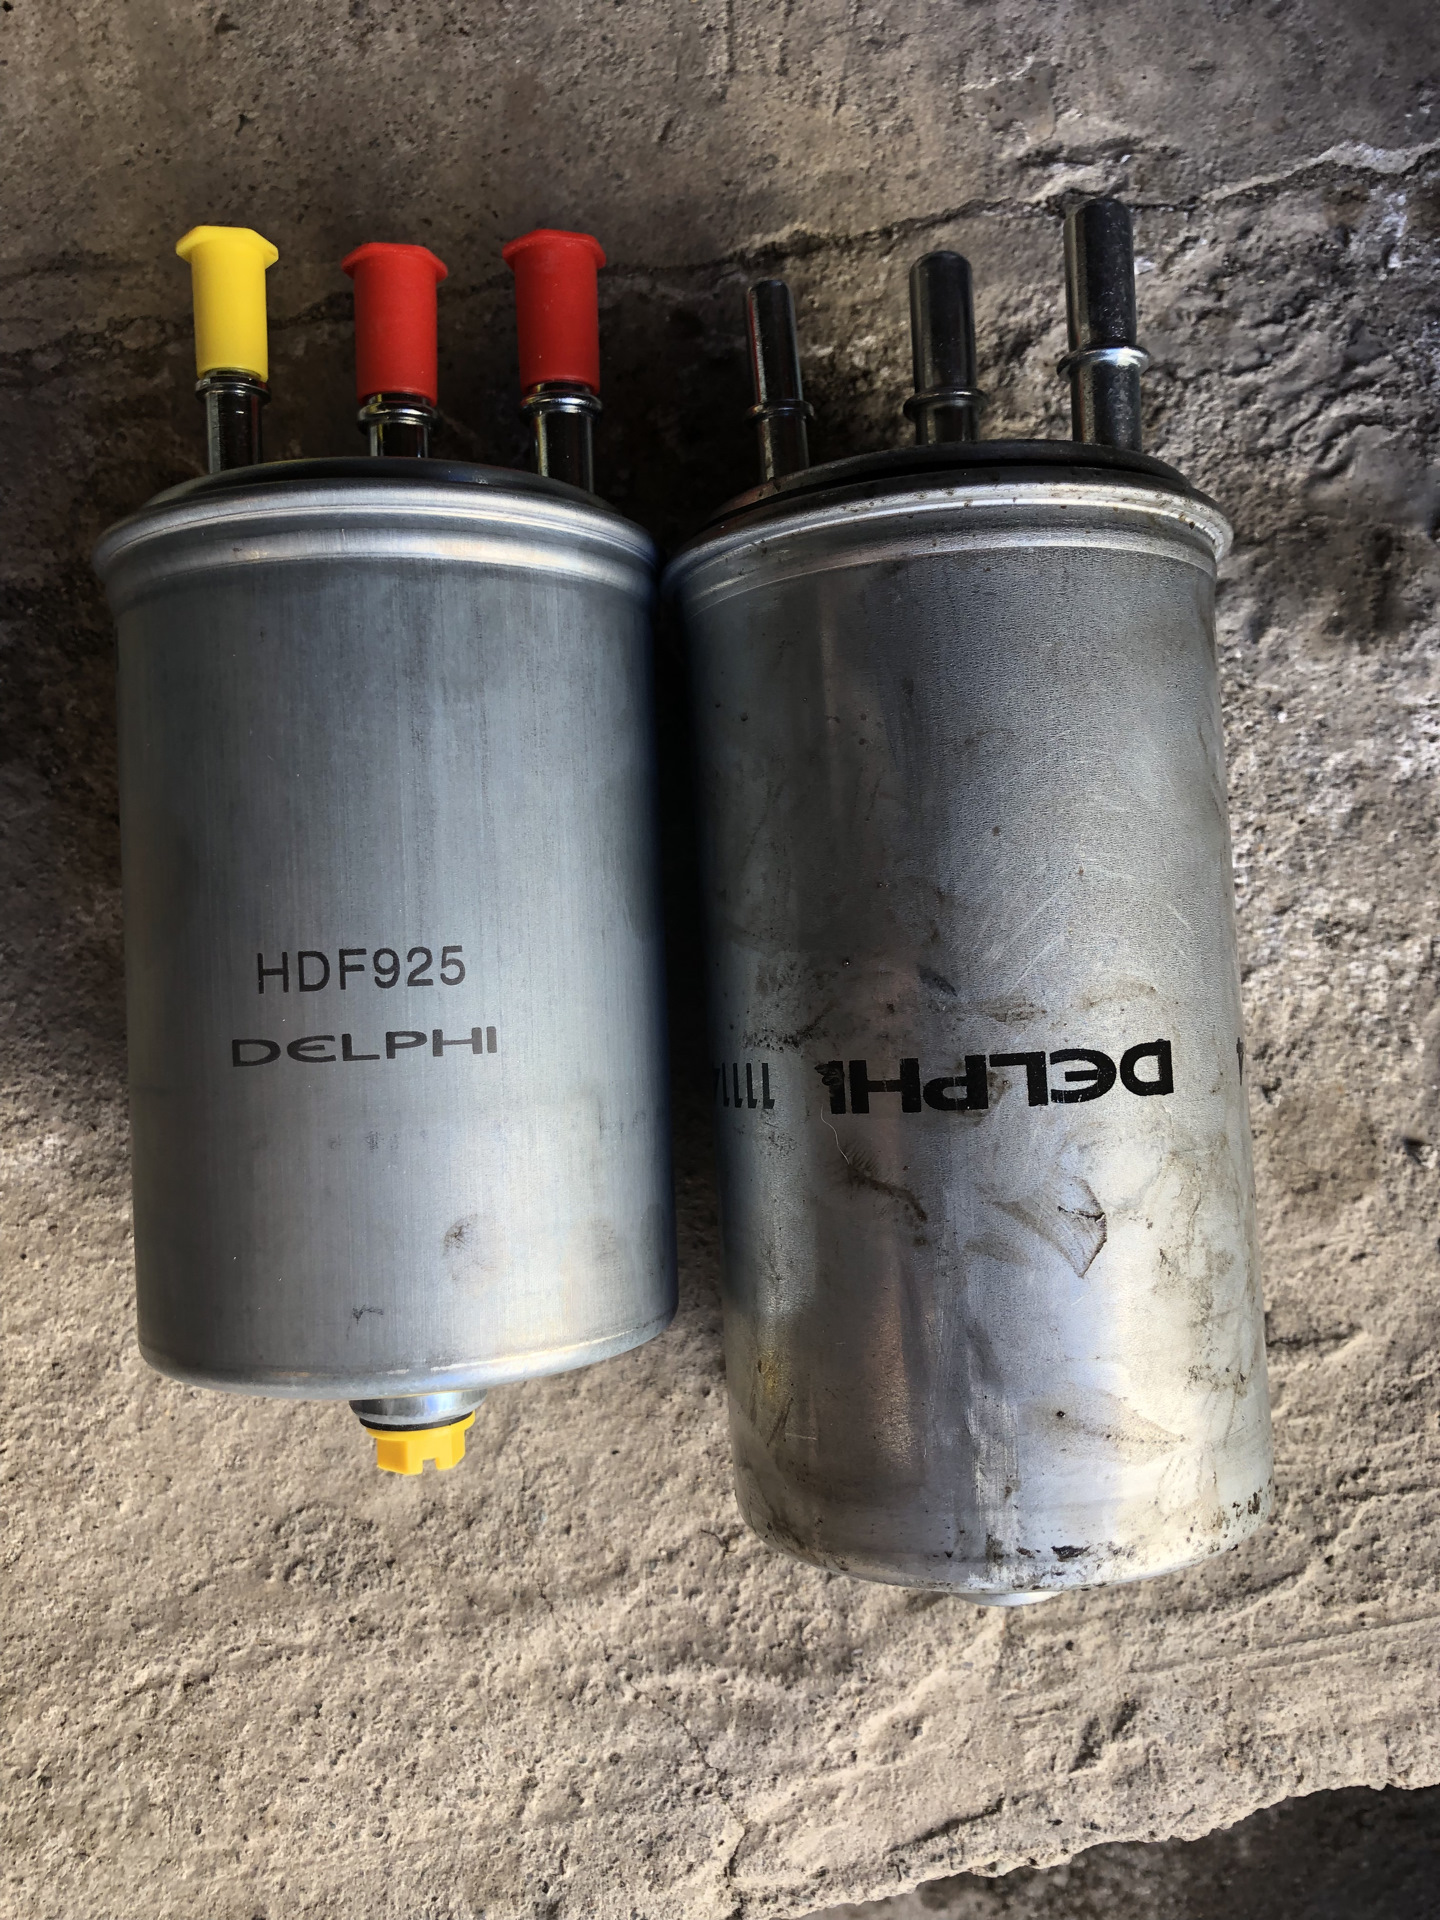 Ховер н5 топливный фильтр. Hover h5 топливный фильтр. Топливный фильтр Hover h5 дизель. Фильтр топливный Hover h5 дизель 2.0. Фильтр топливный HDF 925 DELPHI d20dt.